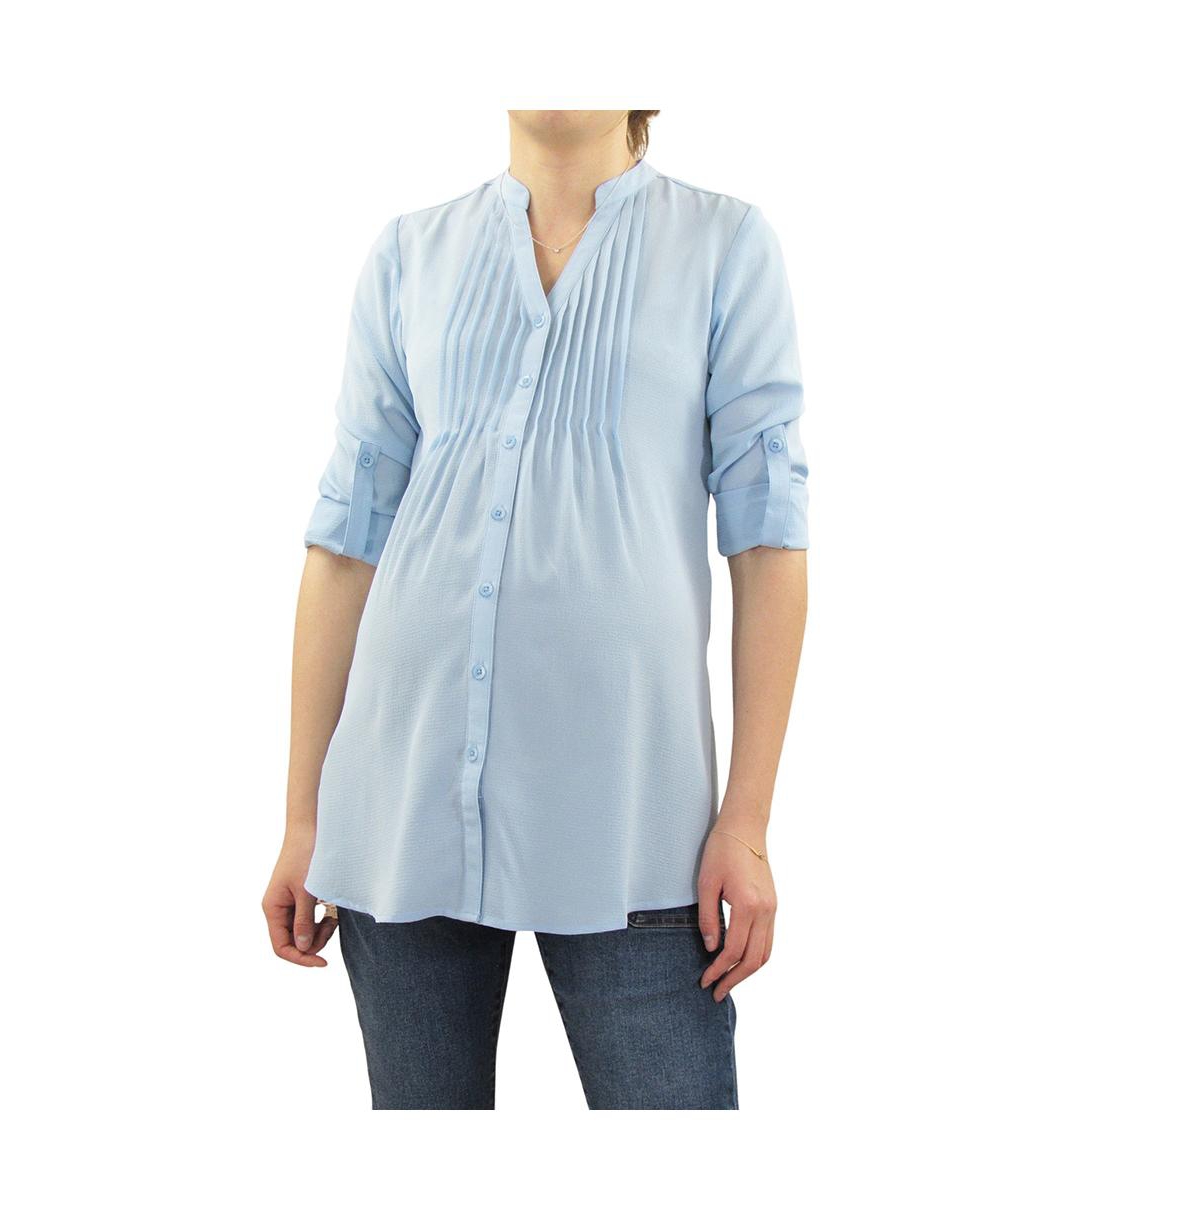 Maternity Pleated Roll Sleeve Nursing Top - Light/Pastel Blue